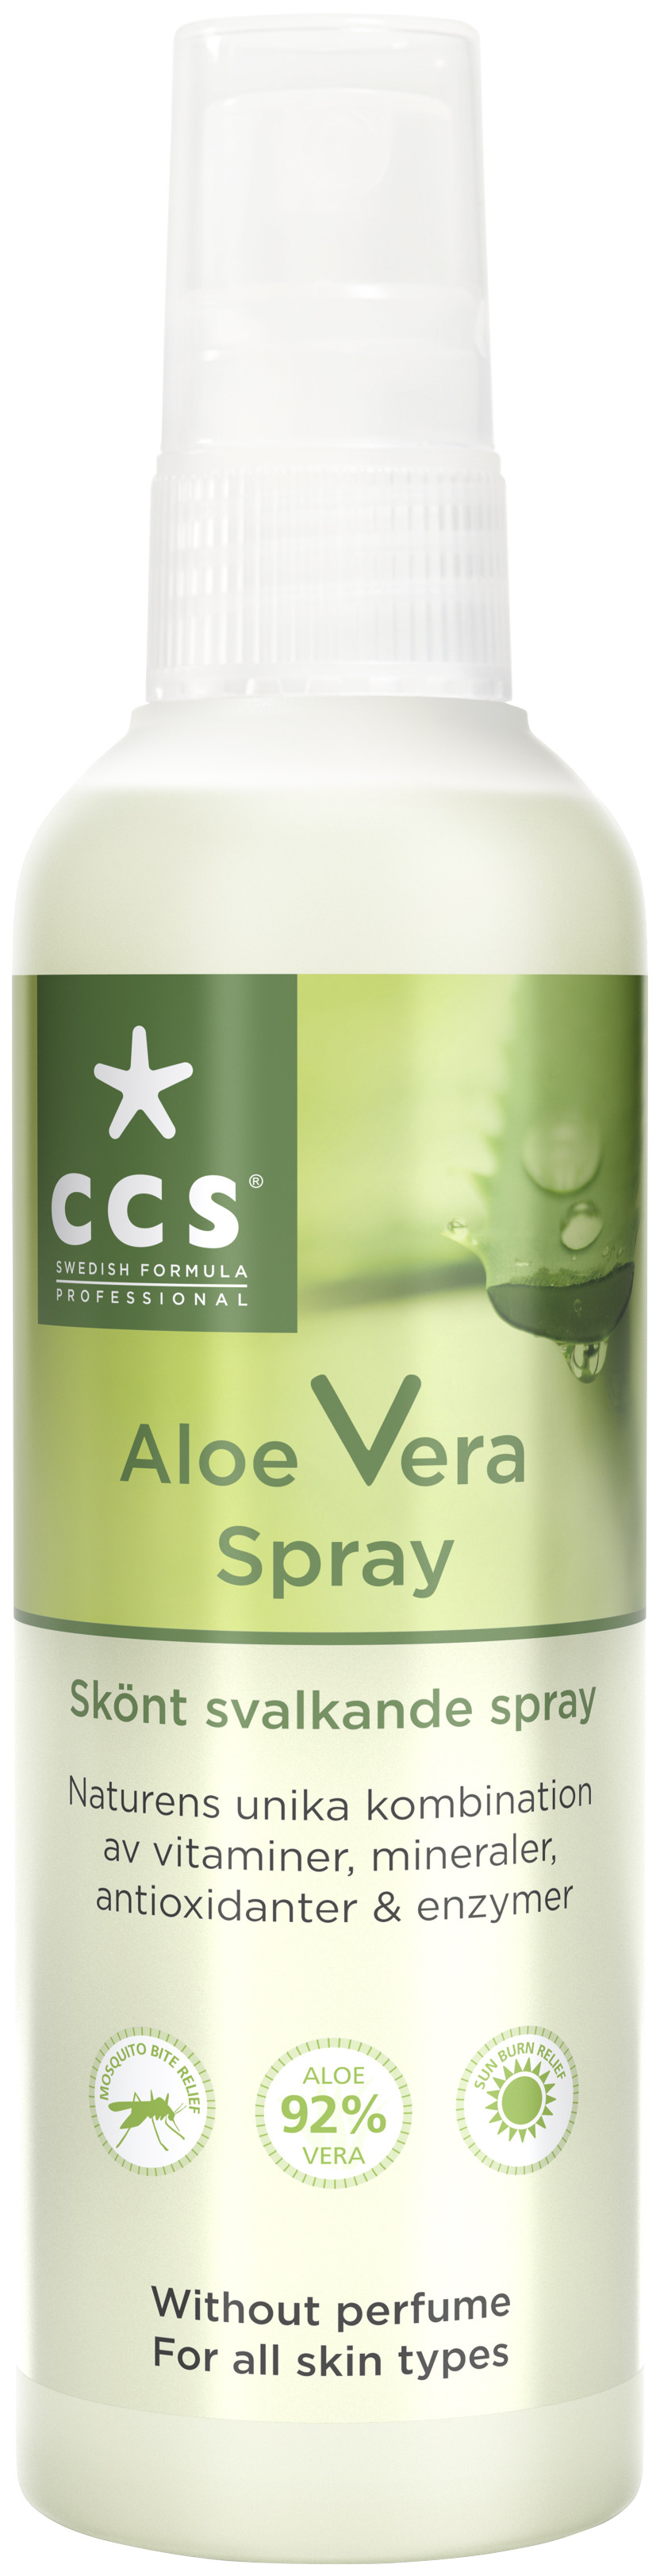 CCS Aloe Vera Spray Oparf 150ml